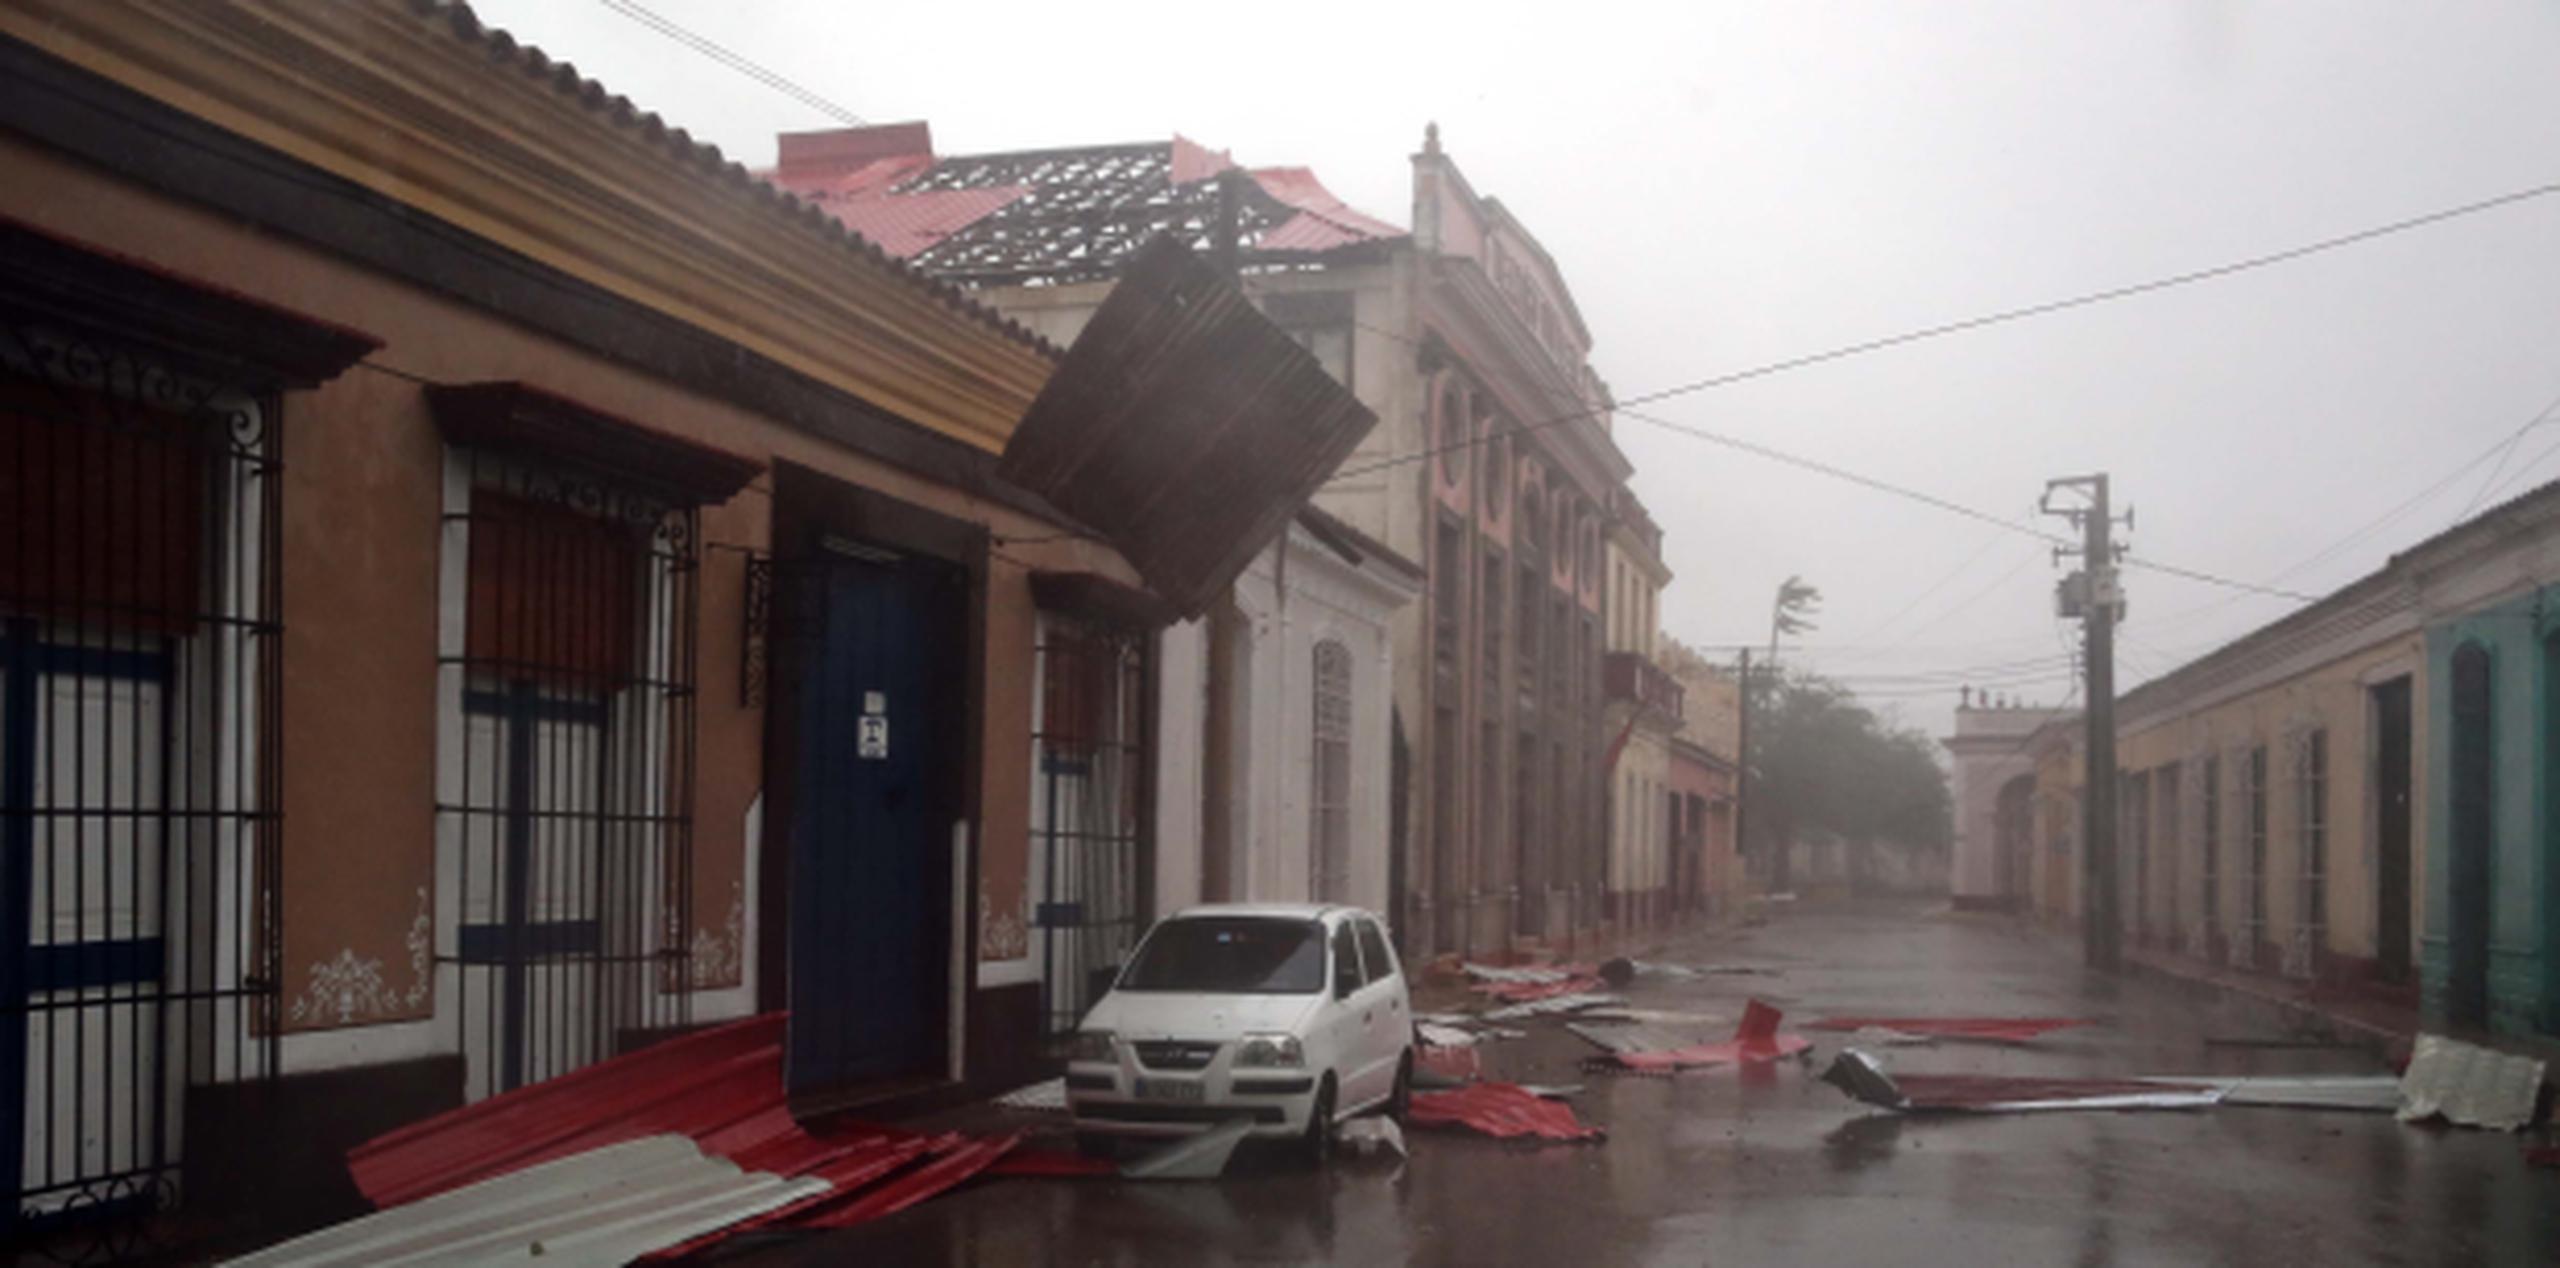 En el pueblo de Remedios los vientos de Irma habían destrozado los techos de muchas viviendas y otras edificaciones. (EFE/Alejandro Ernesto)
